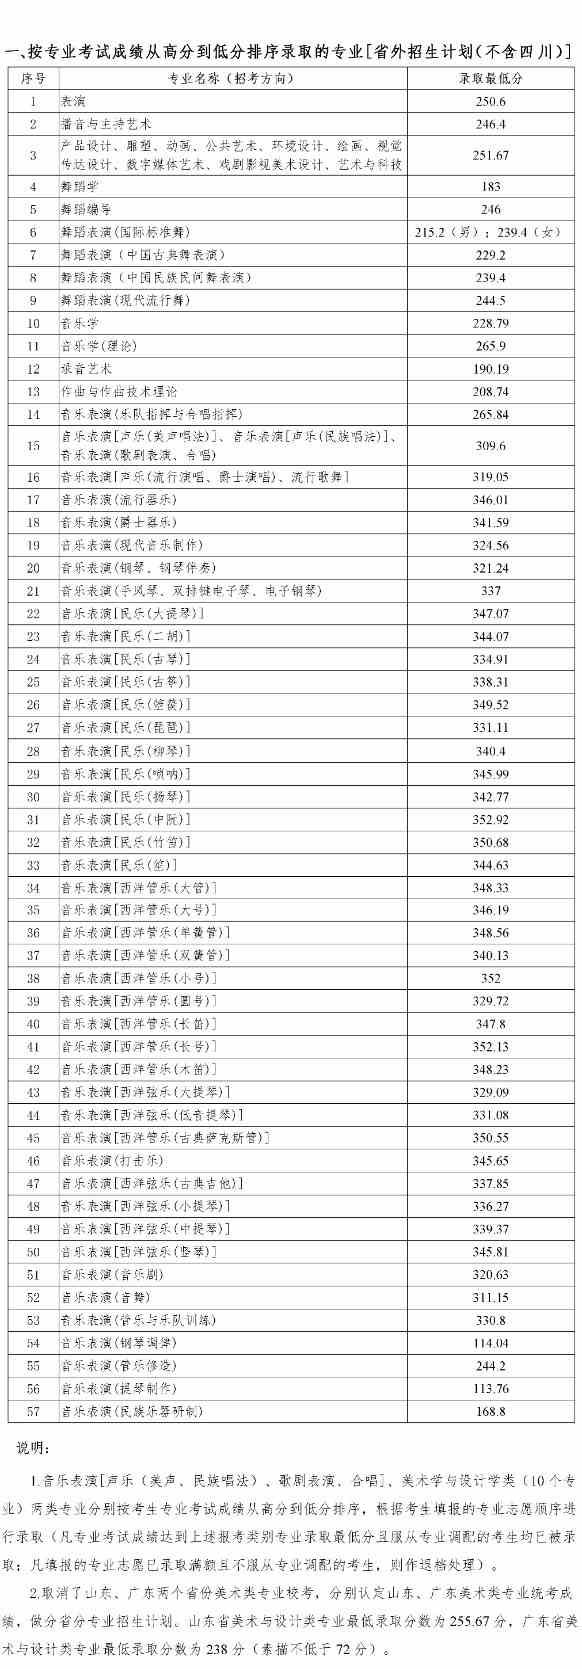 四川音乐学院2020年省外艺术类本科专业录取最低分